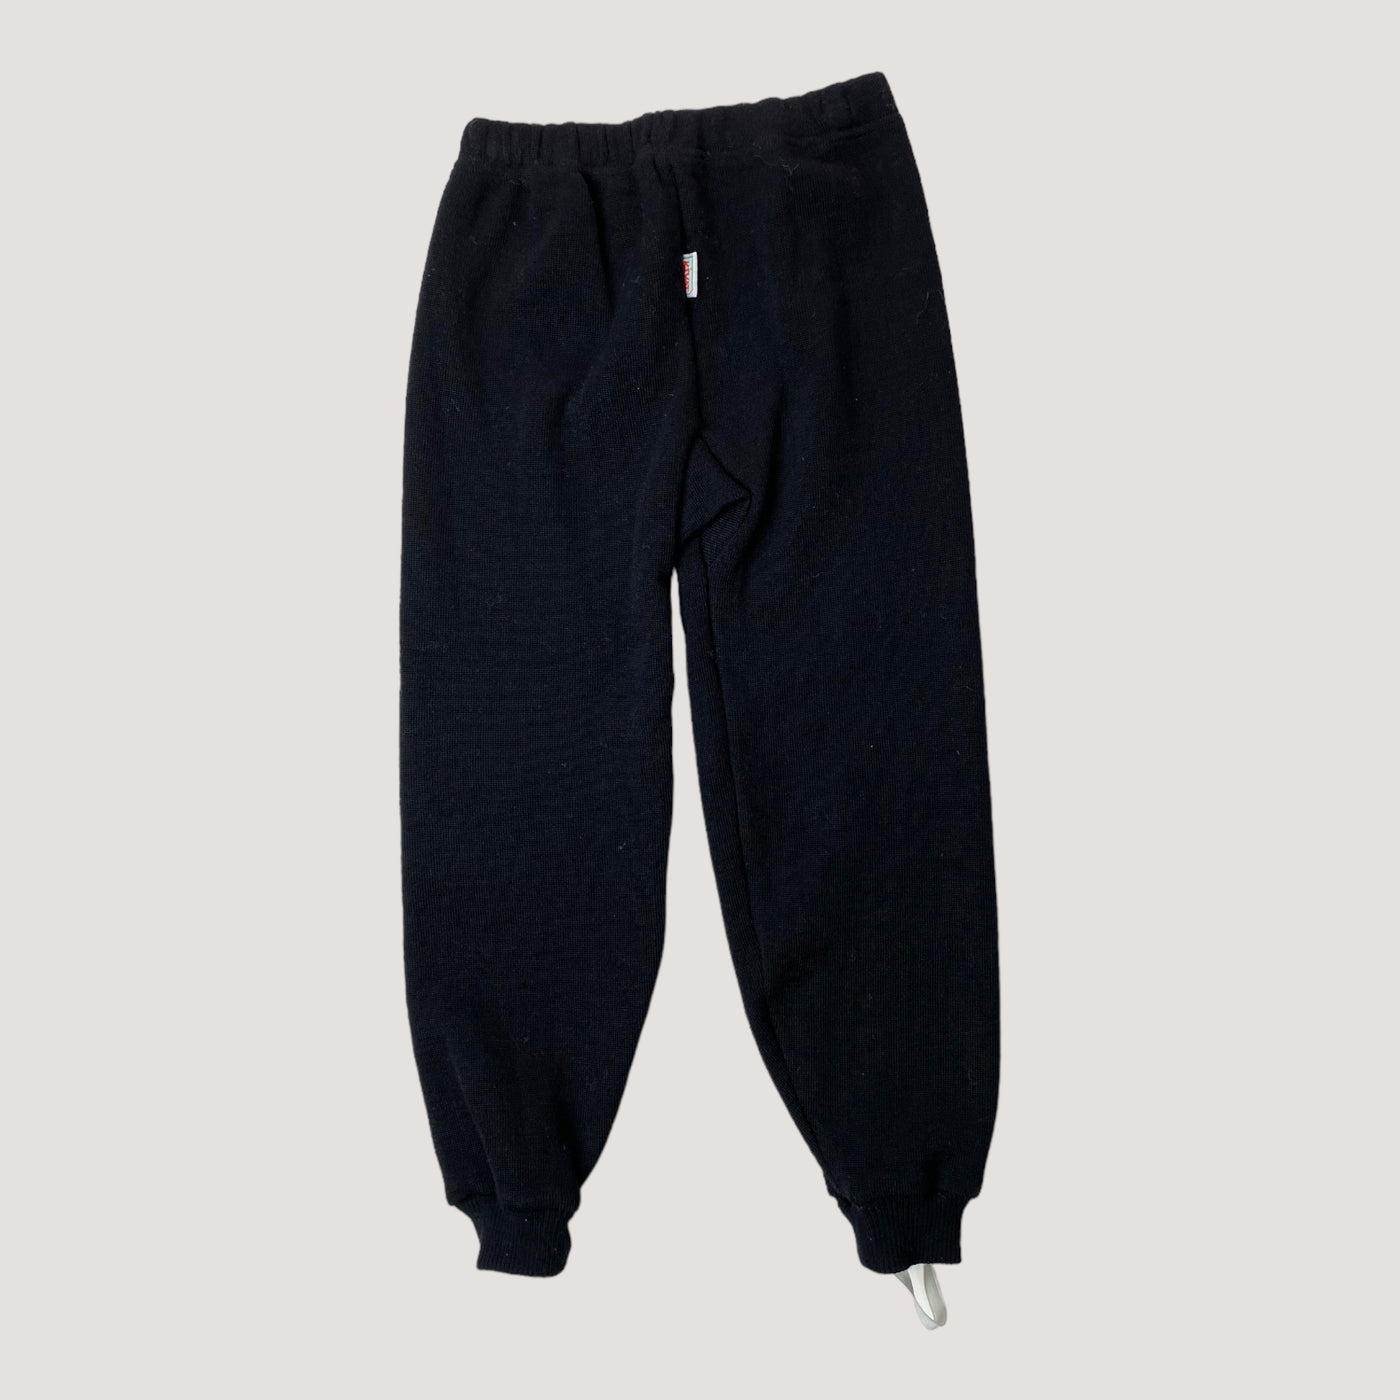 Kivat wool pants, black  | 120cm